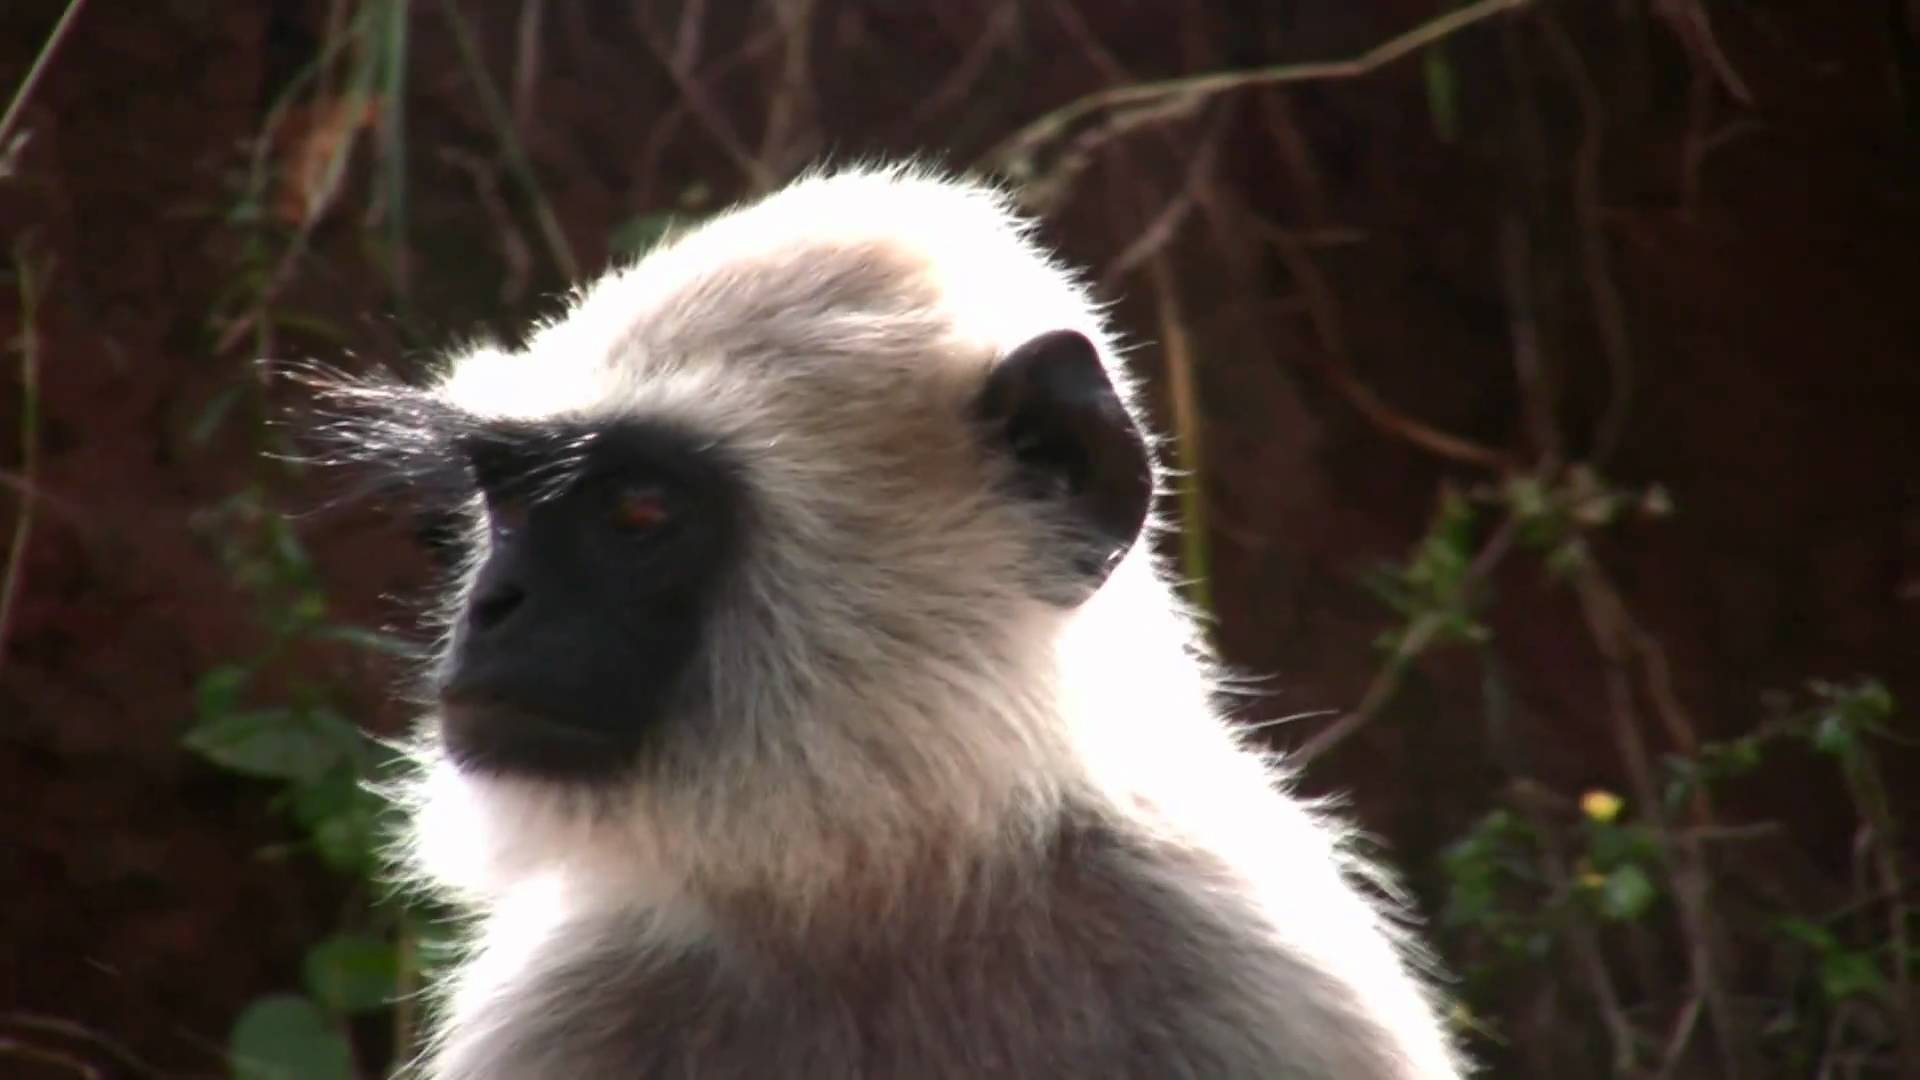 Mudhumalai Forest Black Monkey.mp4 - YouTube